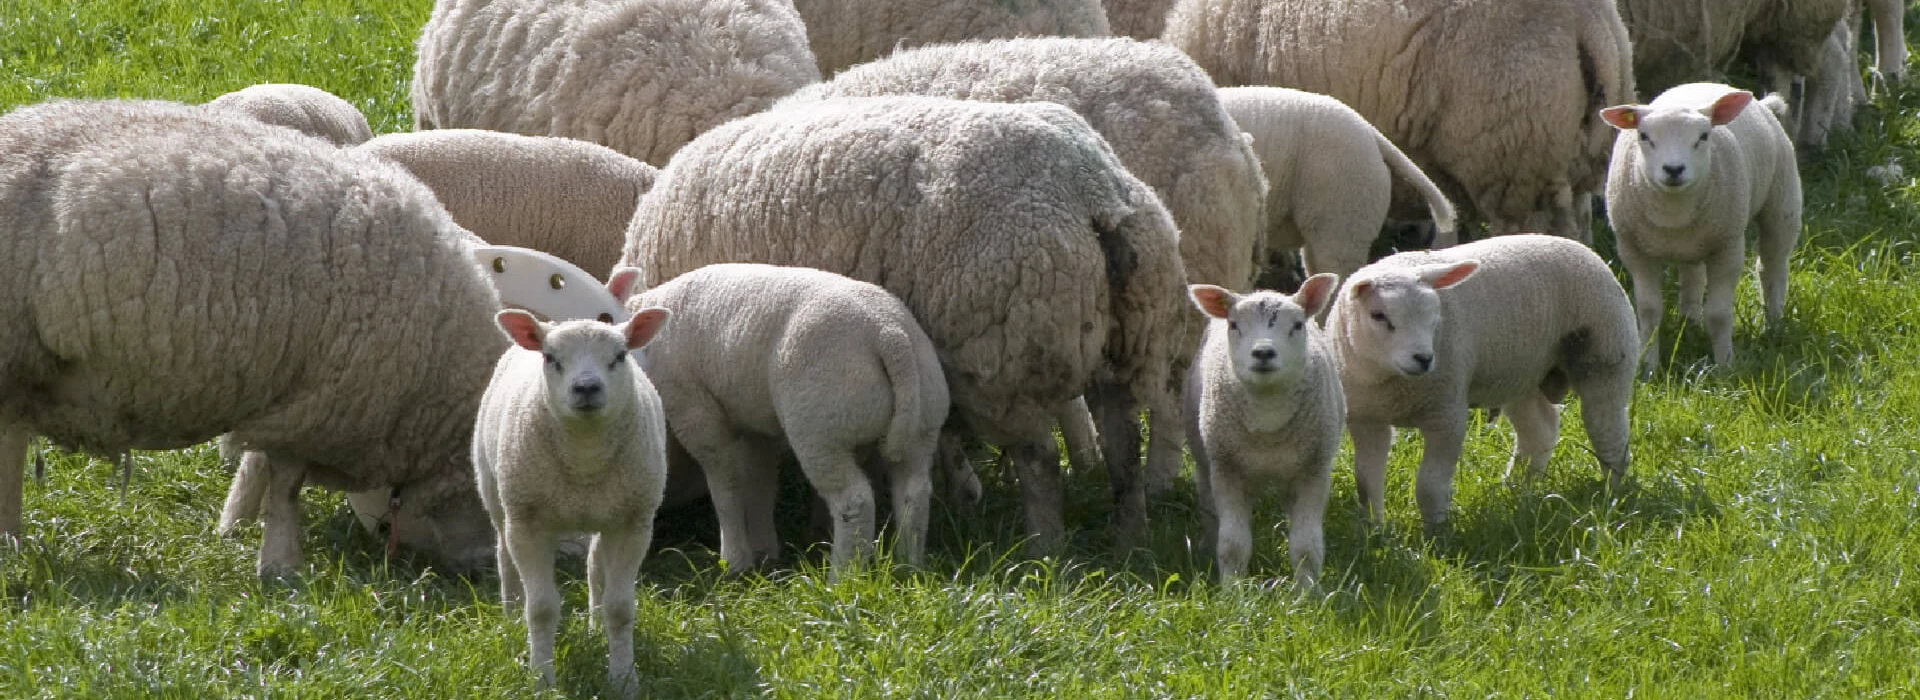 Kudde schapen met lammetje